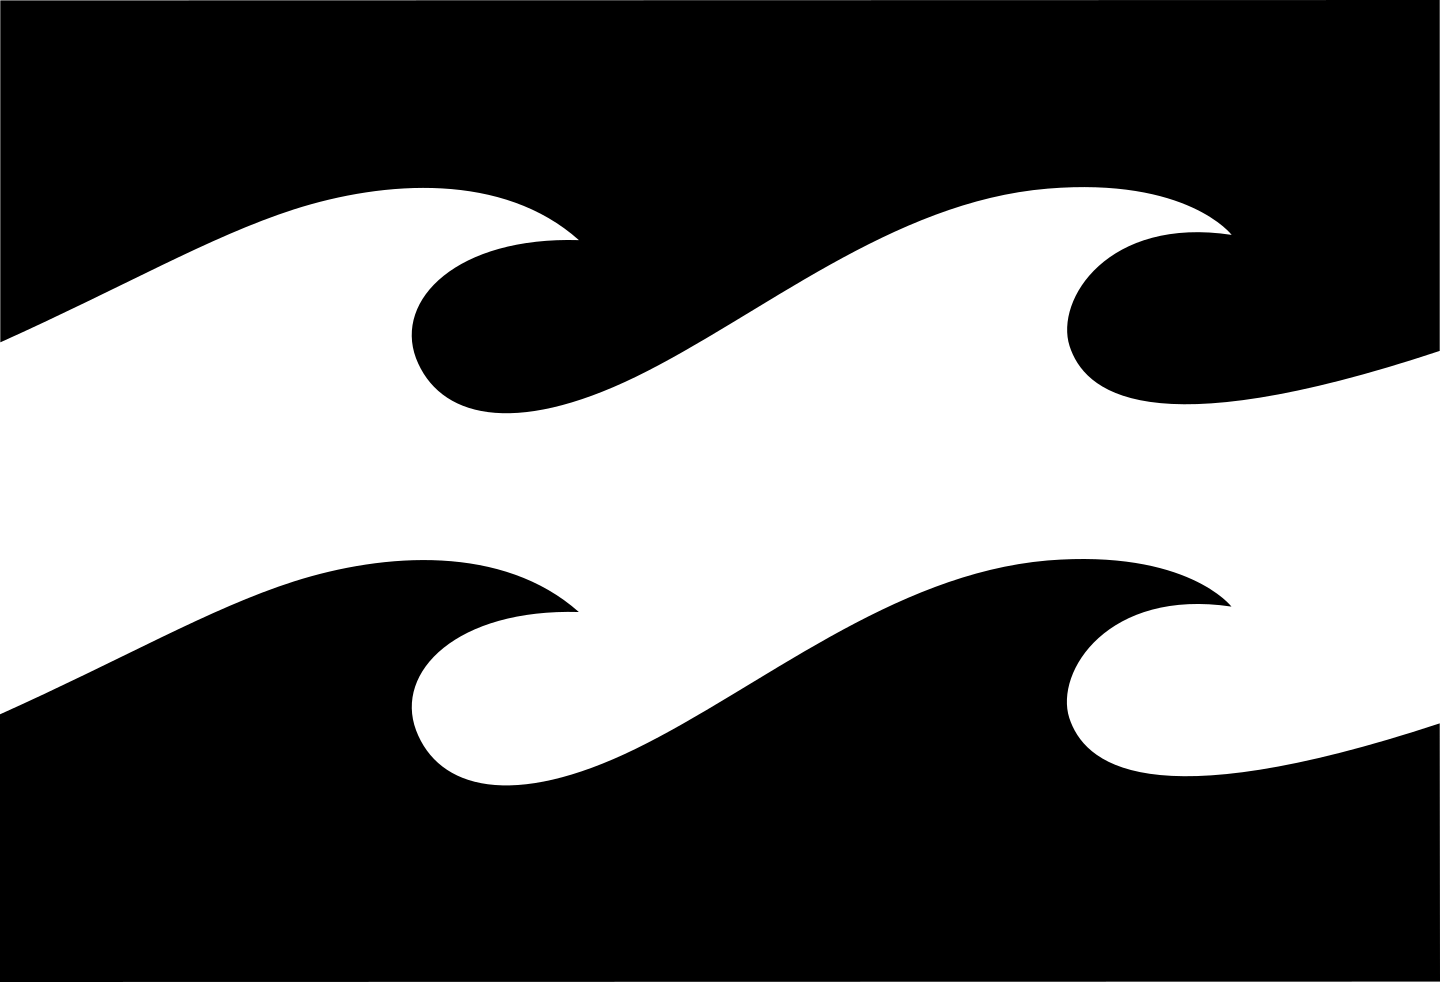 Billabong logo.